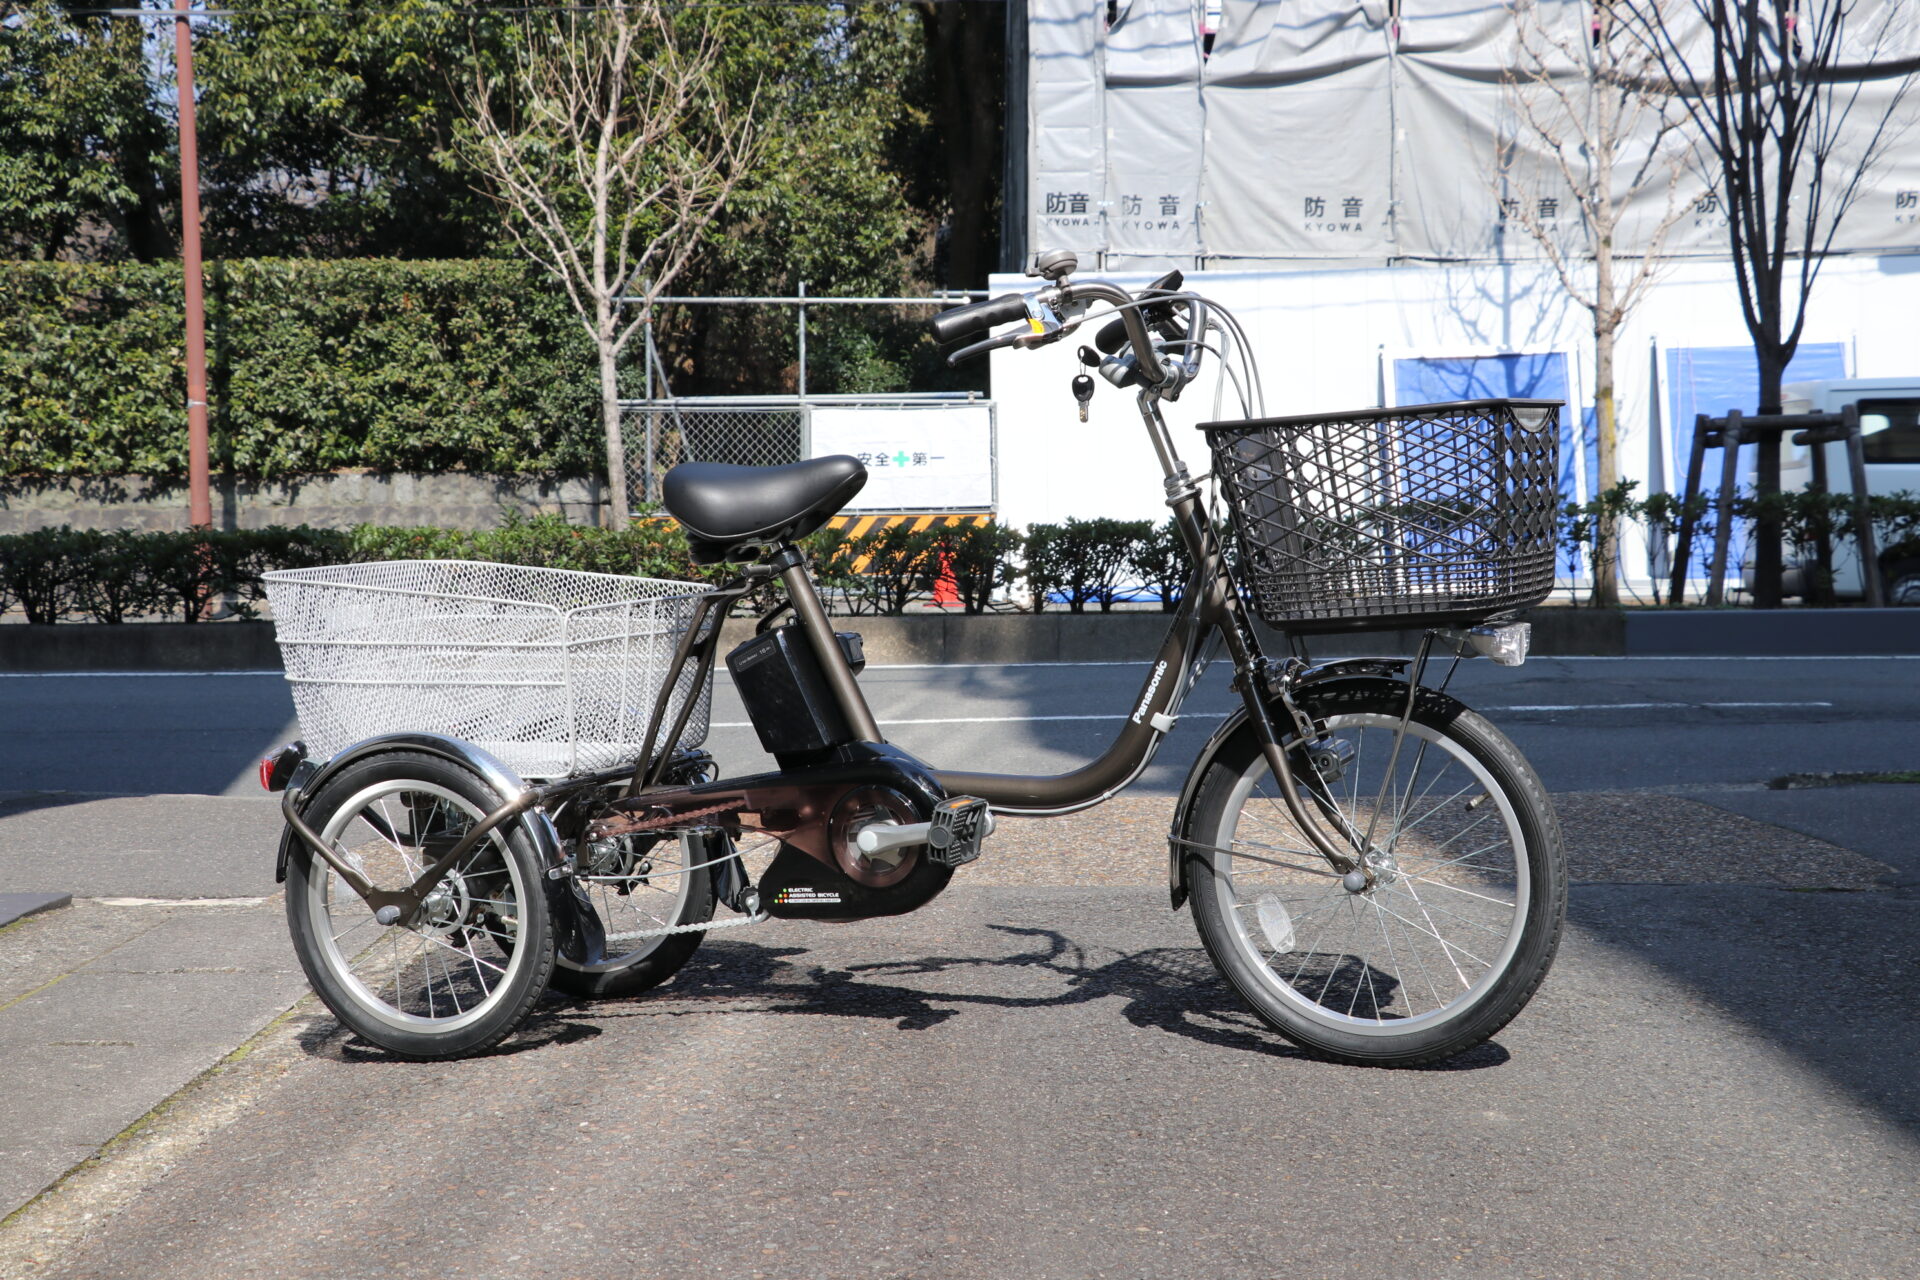 中古電動三輪 パナソニック ビビライフ タップリ荷物が積める電動アシスト三輪車の美品中古が入荷しました 京都の中古自転車 新車販売 サイクルショップ エイリン